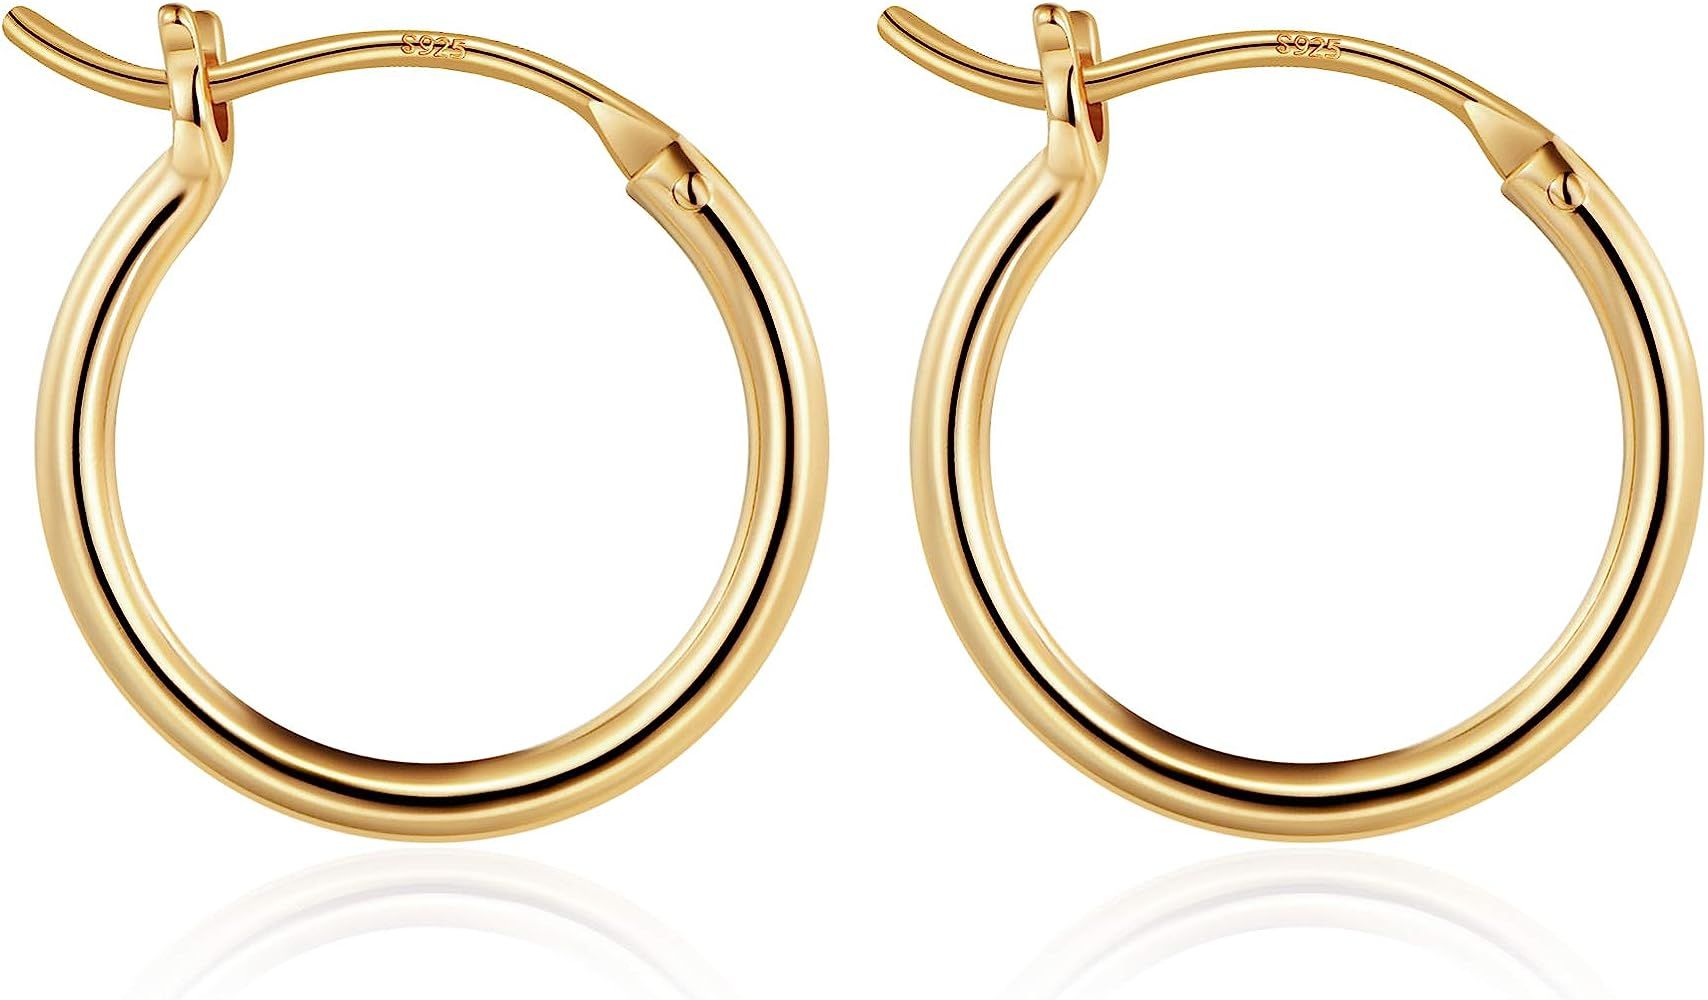 M MOOHAM Gold Hoop Earrings for Women, 14K Real Gold Steling Silver Post Hypoallergenic Hoops Ear... | Amazon (US)